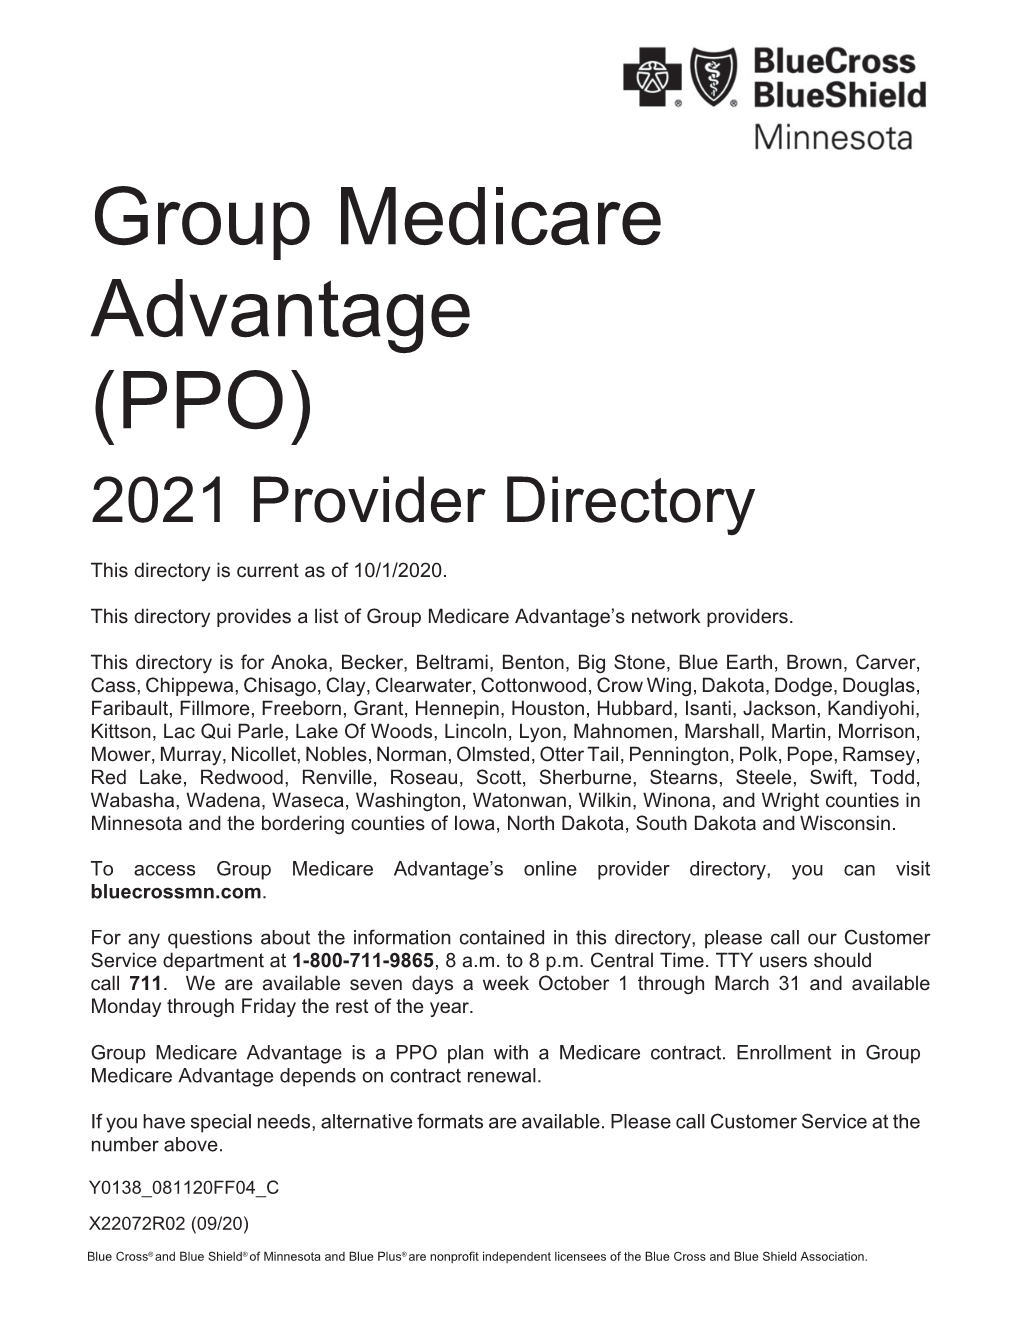 2021 Advantage Provider Directory